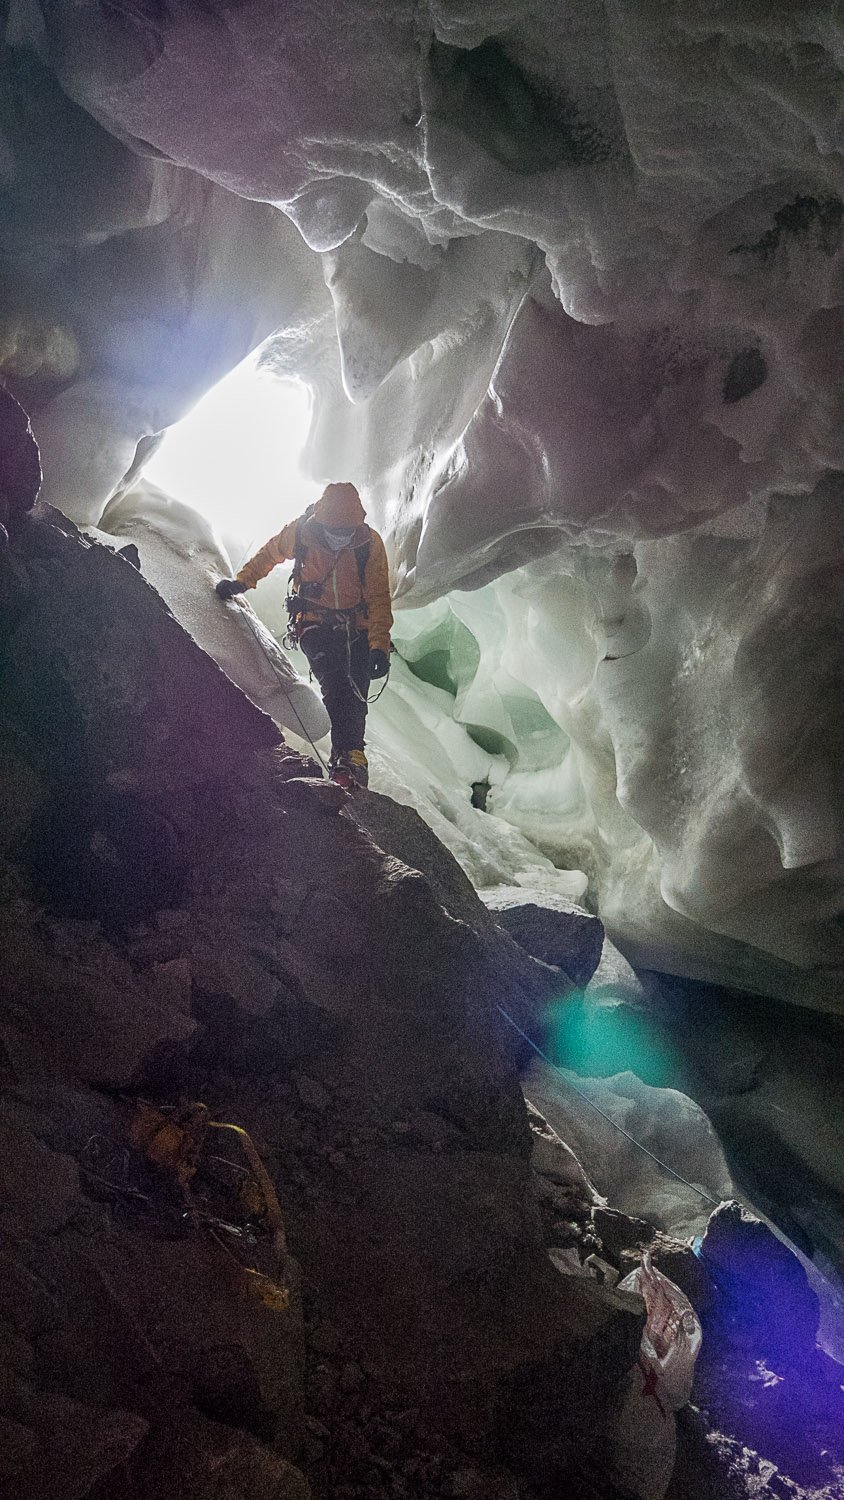 Interview - David Göttler: Scheitern gehört beim Expeditionsbergsteigen einfach mit dazu.